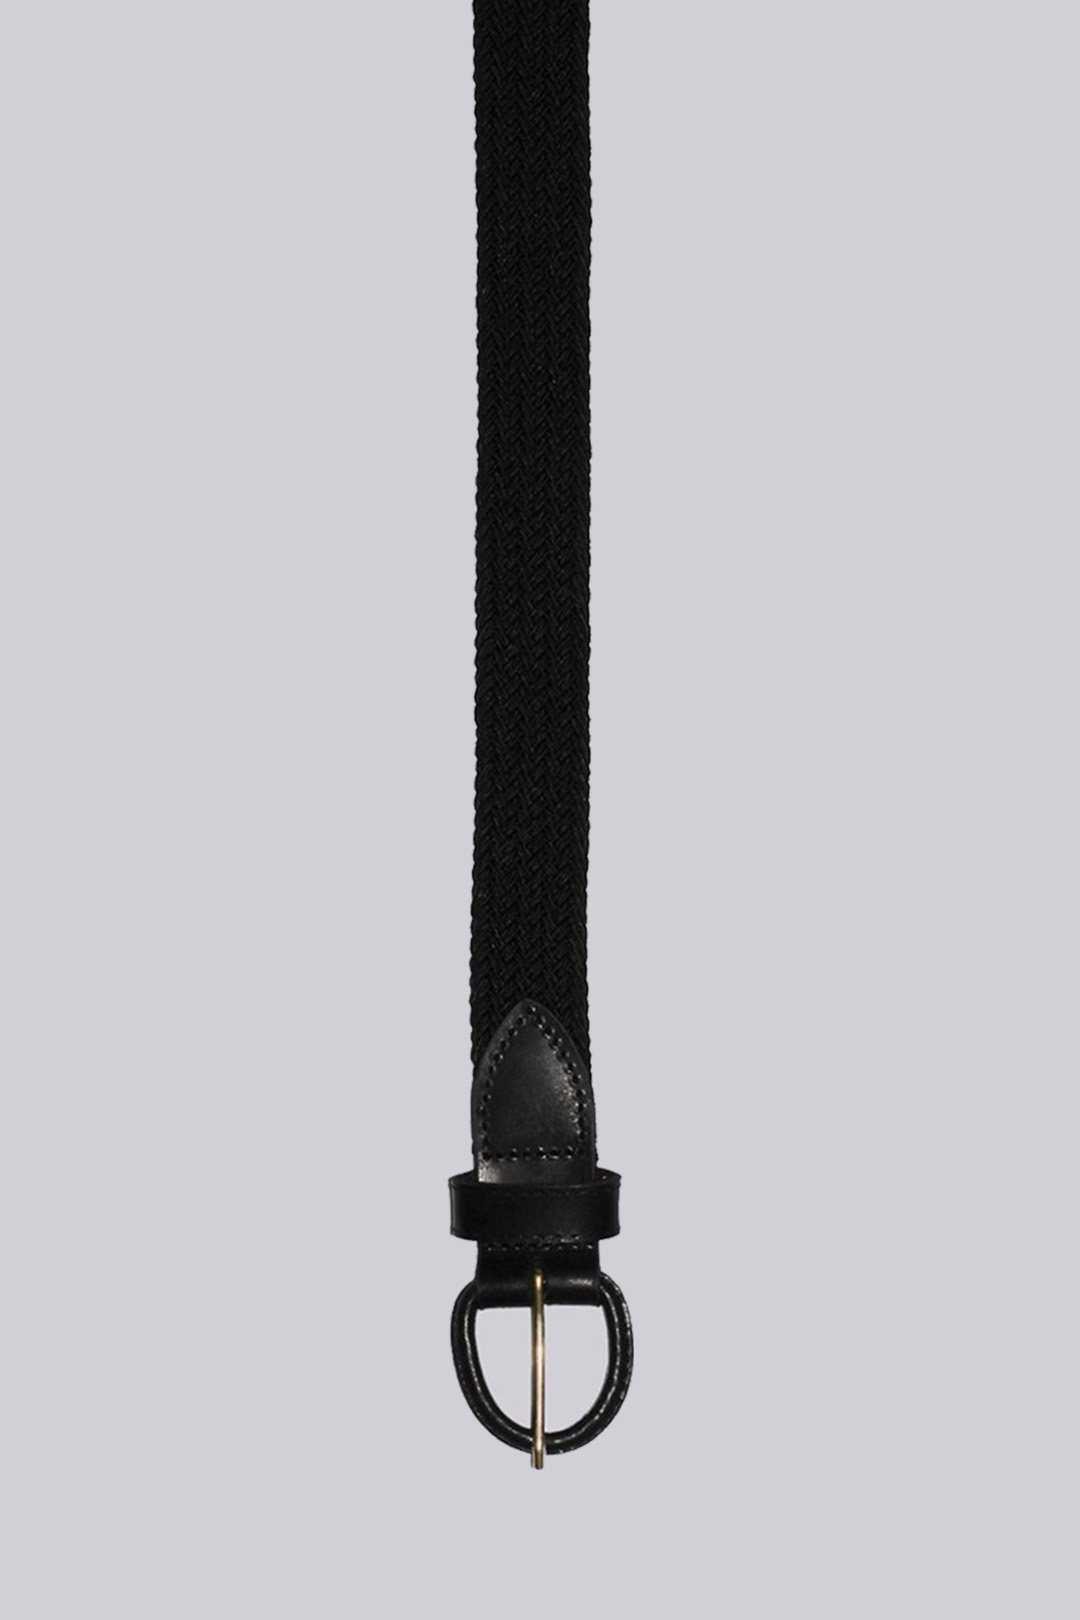 https://www.liquidyachtwear.com/wp-content/uploads/2020/11/liquid-yacht-wear-mens-stretch-weave-belts-black.jpg